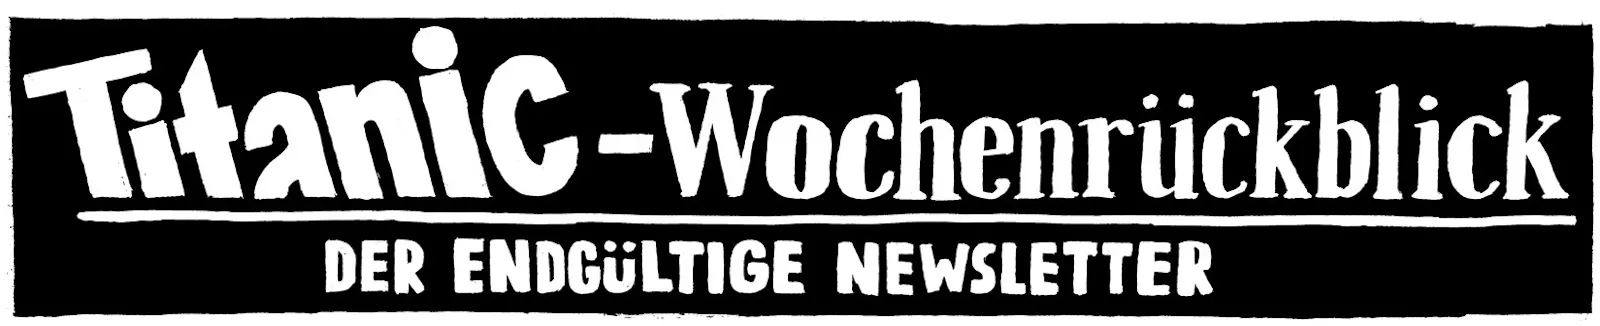 Logo »TITANIC-Wochenrückblick. Der endgültige Newsletter«